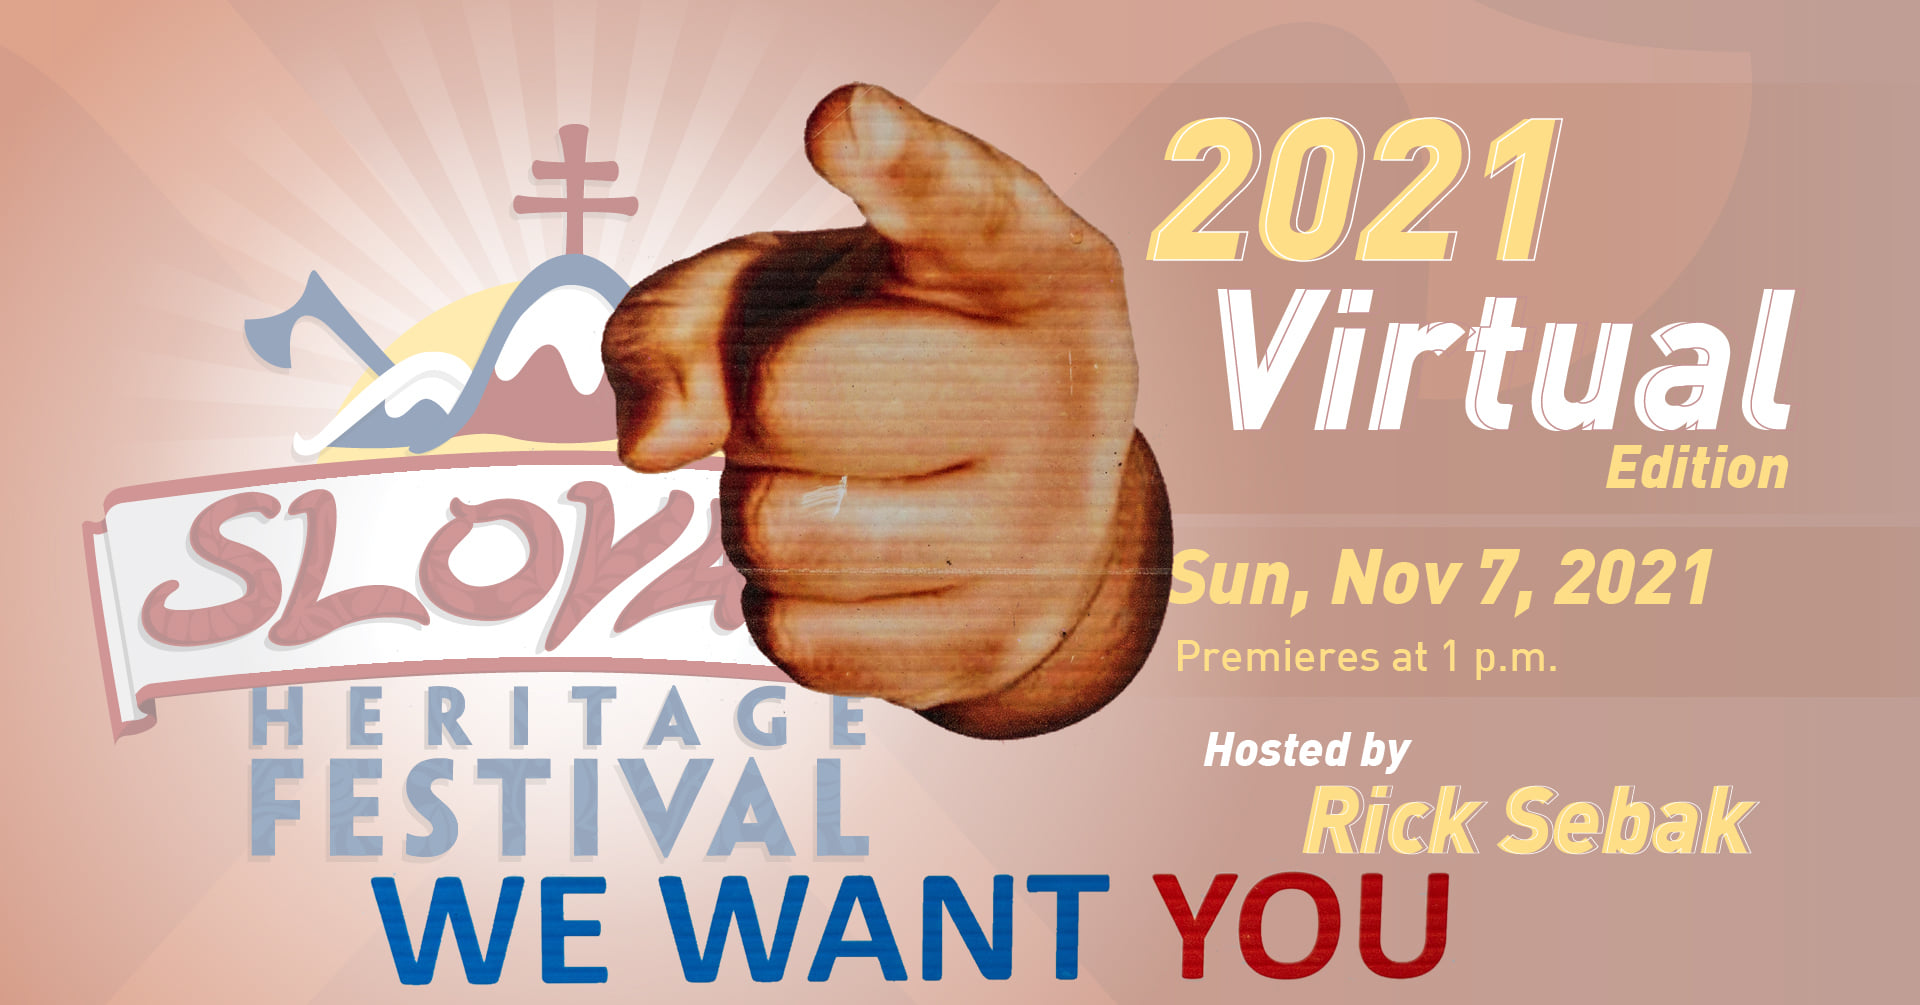 NOVÉ - - - The Slovak Heritage Festival / Festival slovenského dedičstva 2021 Pittsburgh